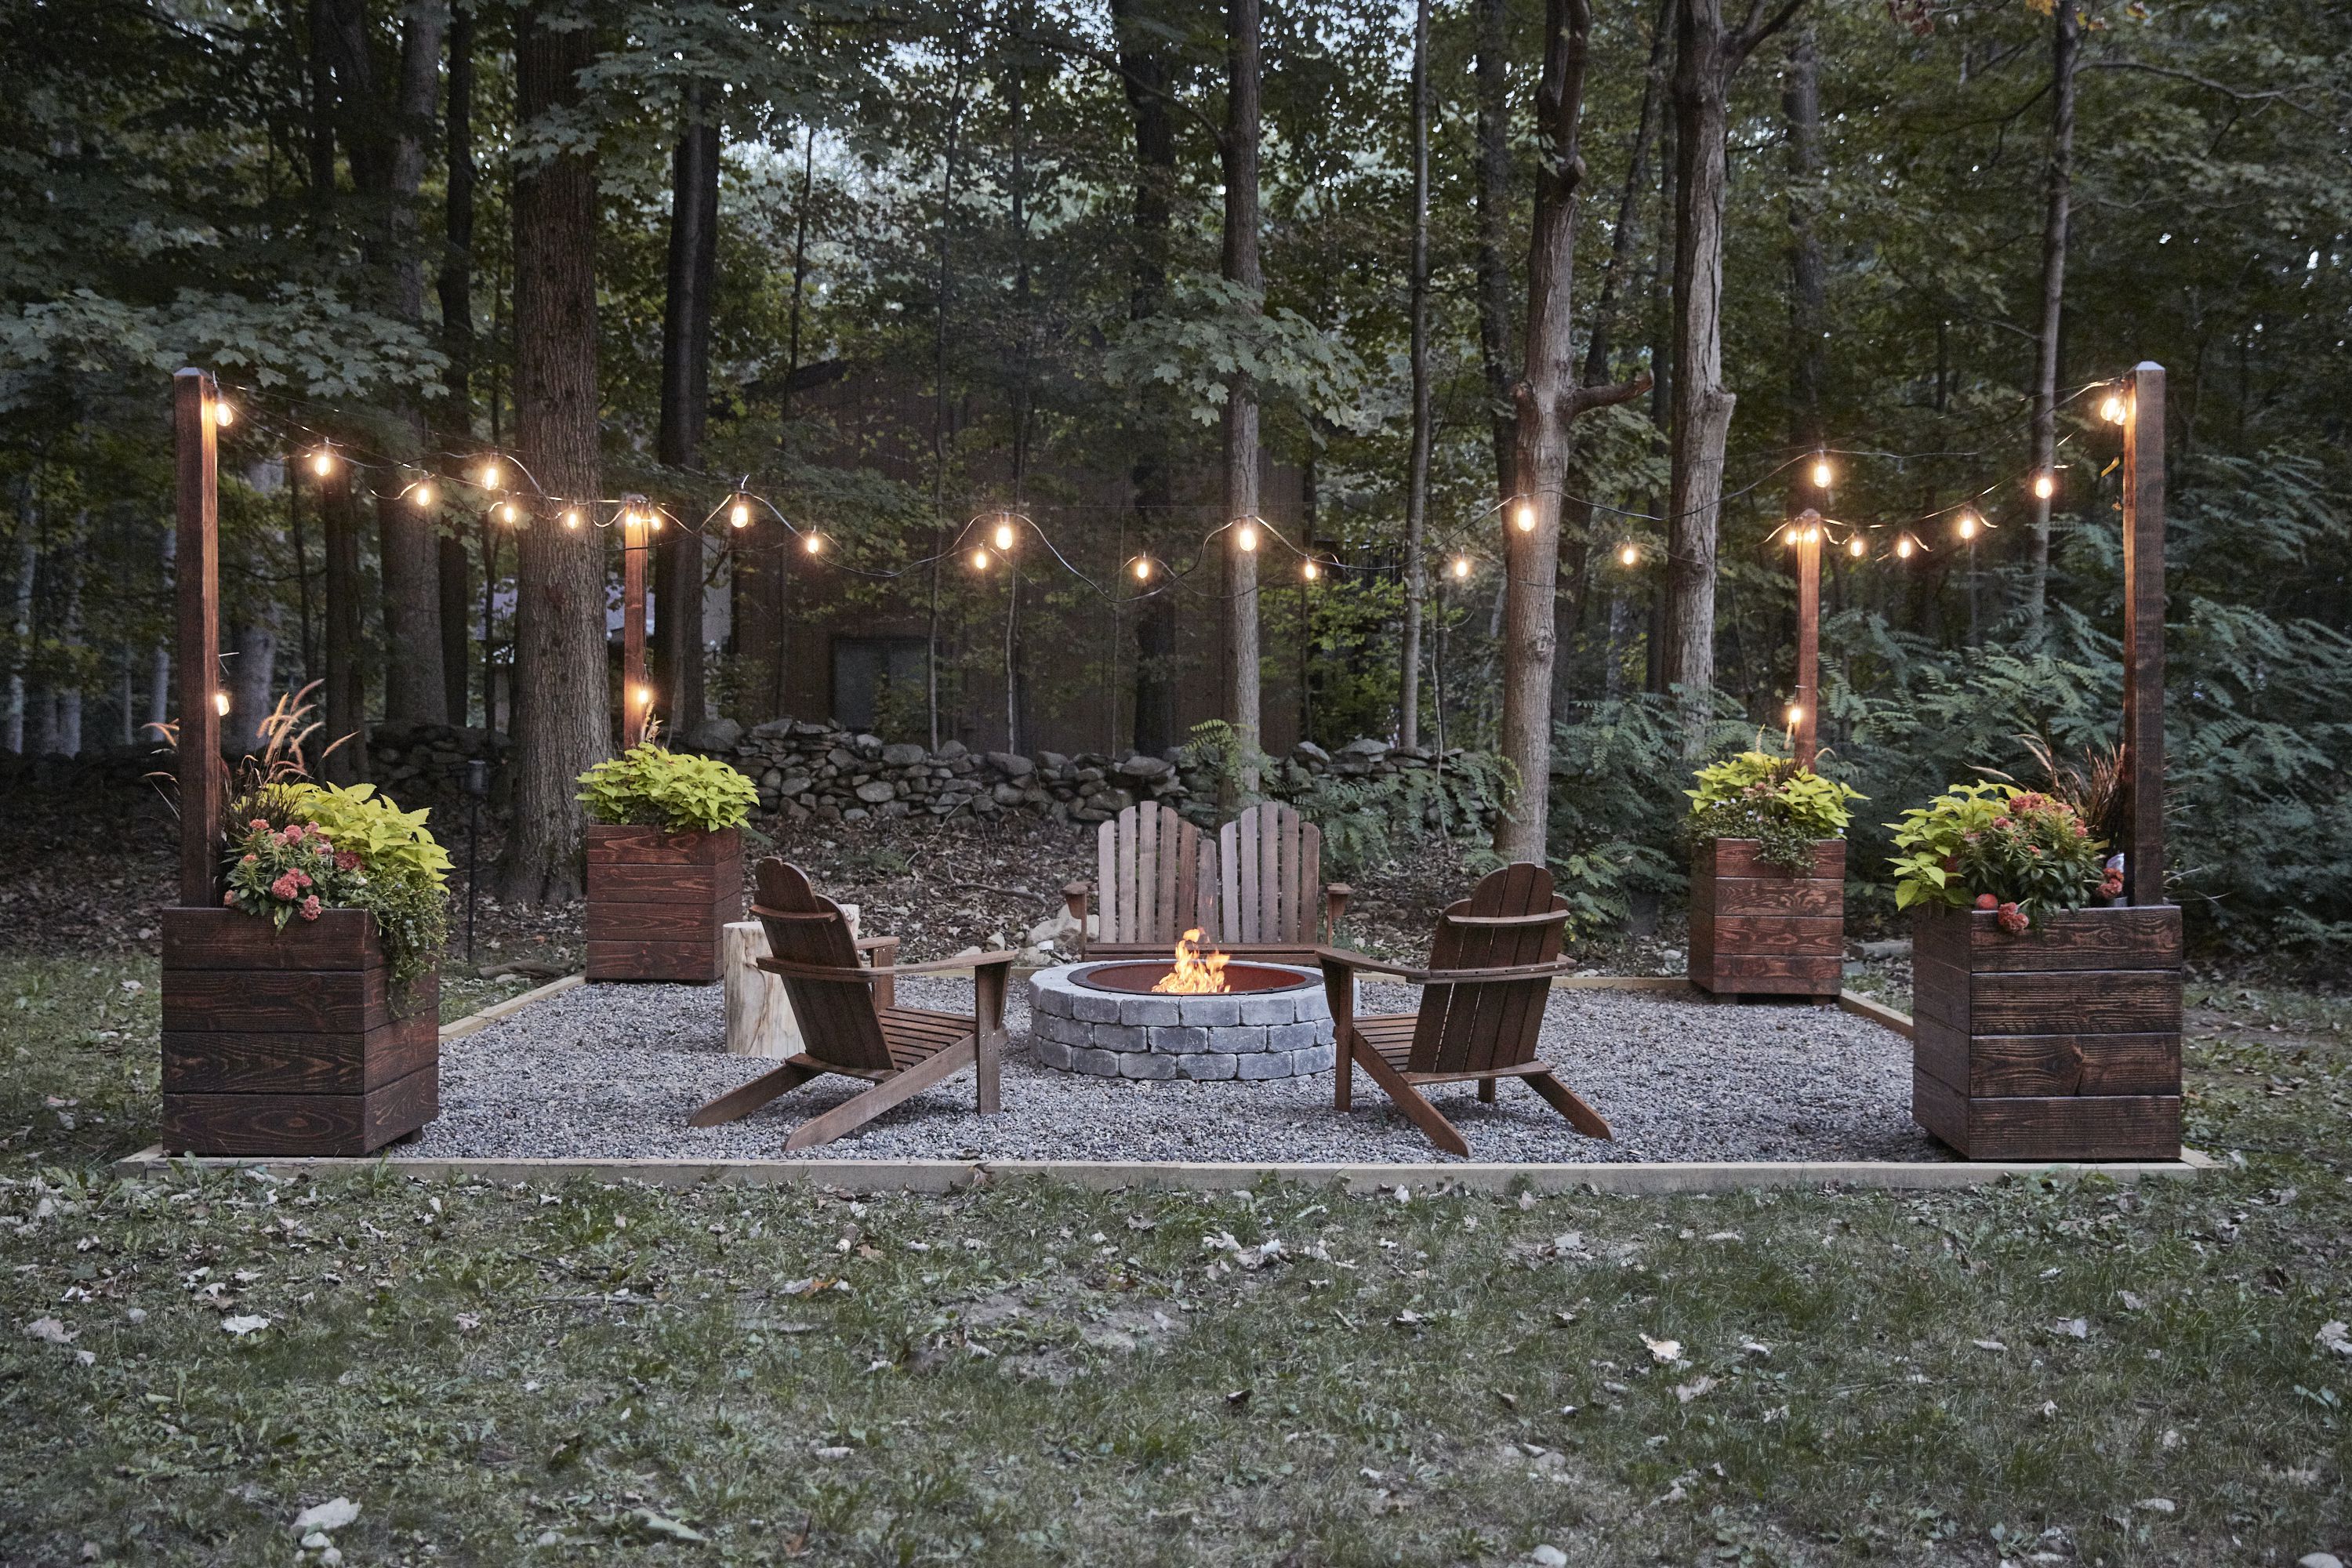 25 Inspiring String Light Ideas for Any Backyard